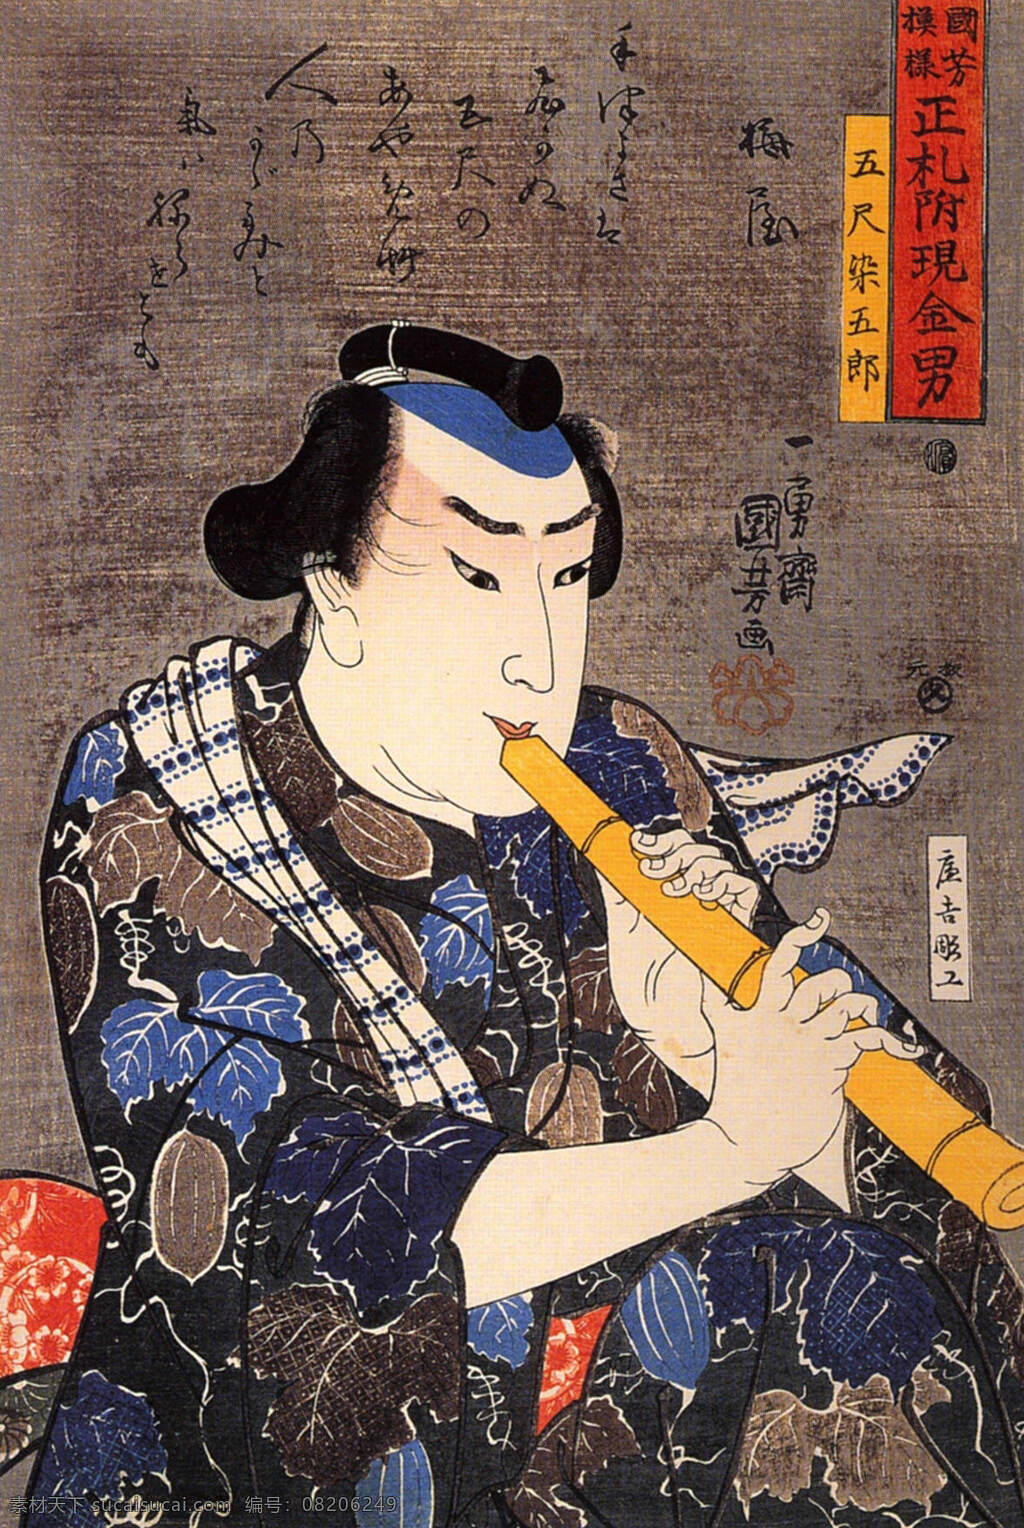 日本 日式 浮世绘 装饰画 壁画 手绘 日本浮世绘 文化艺术 绘画书法